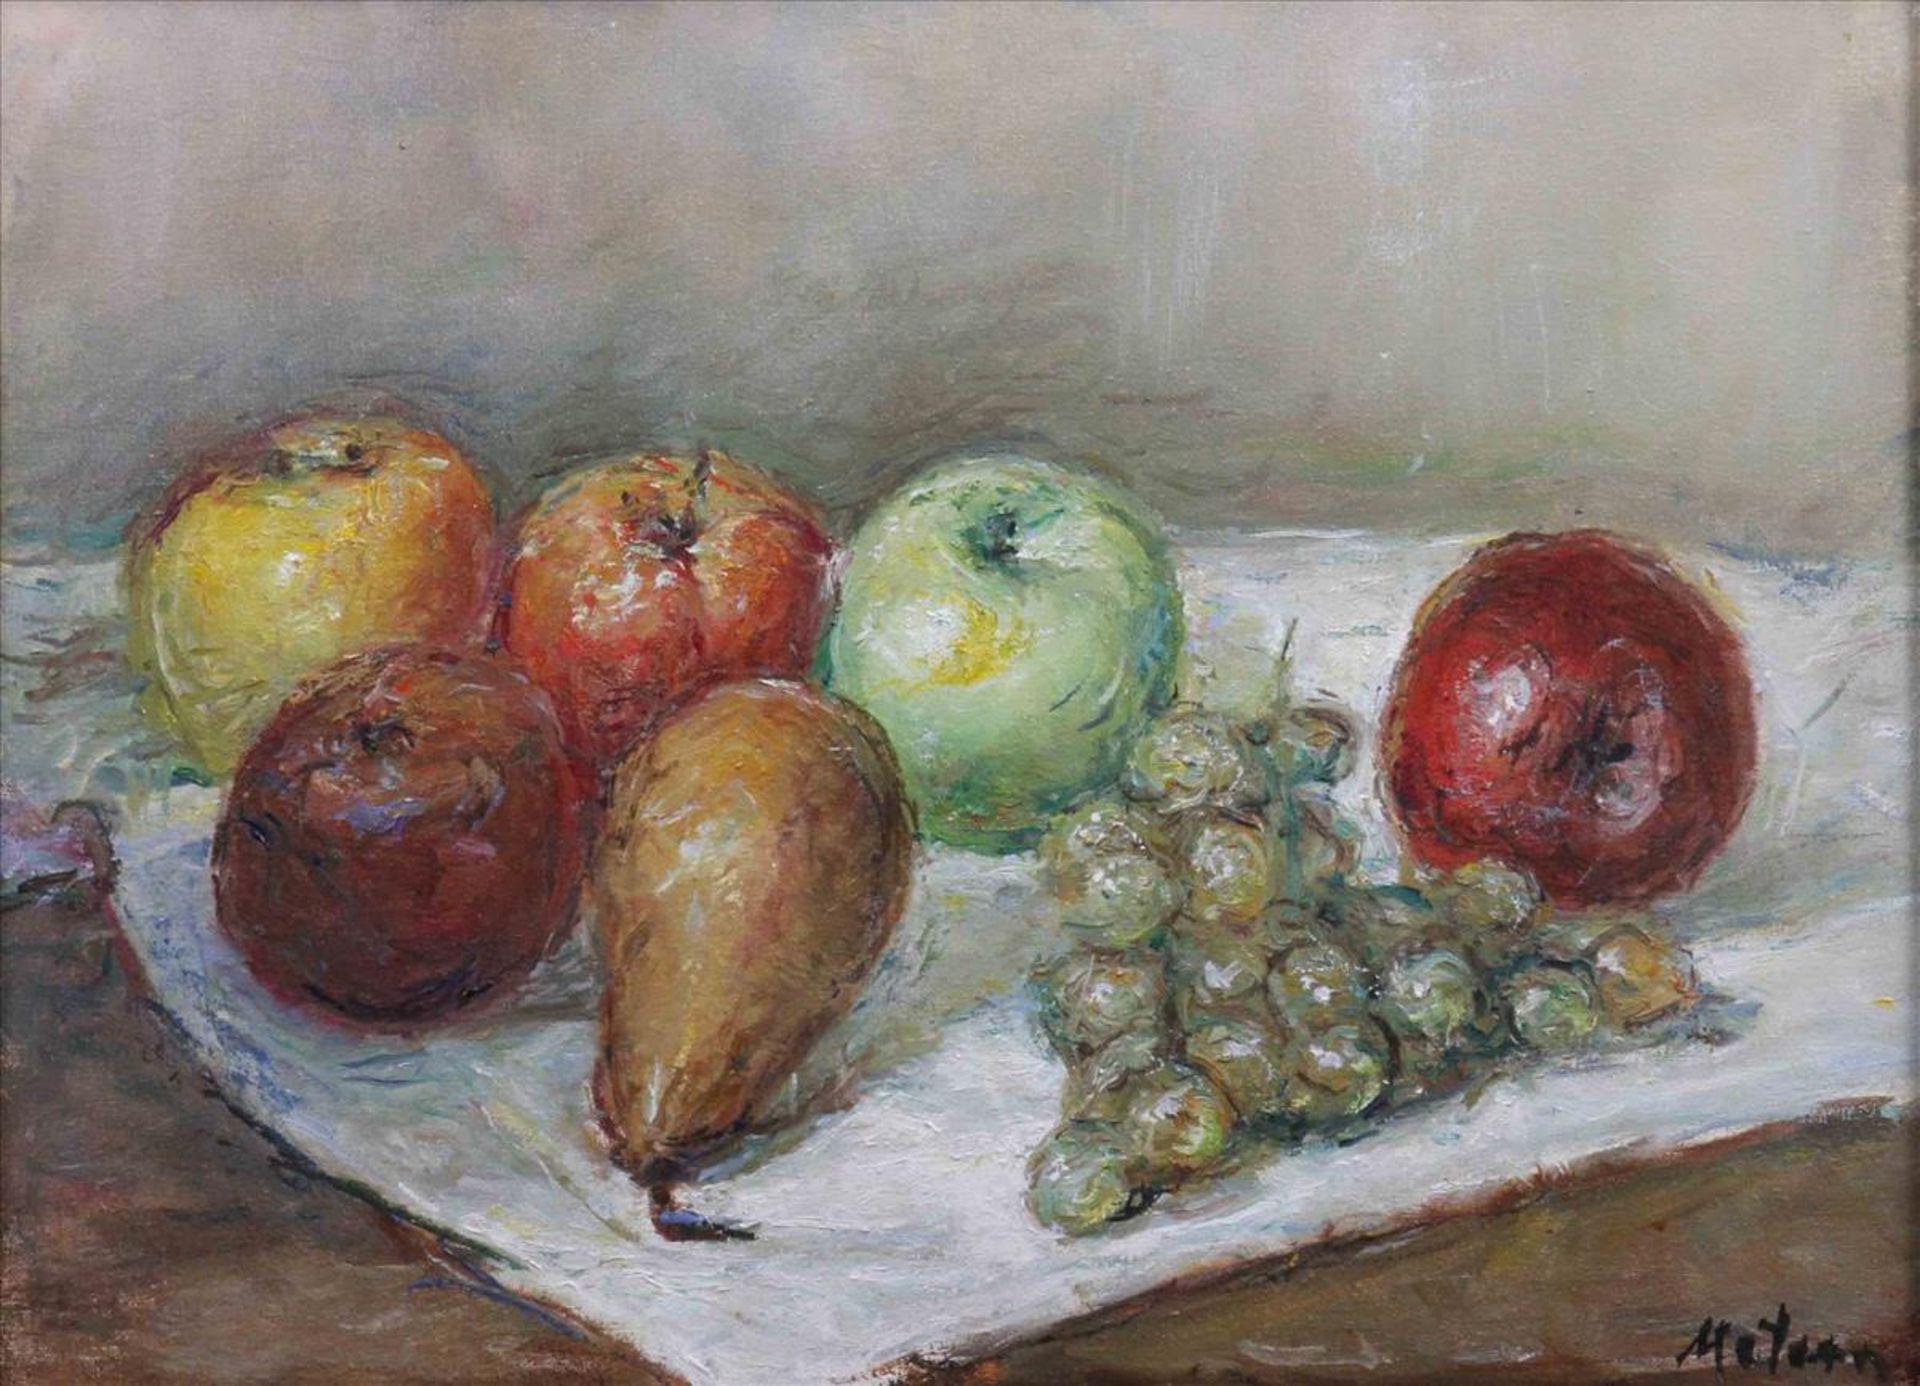 Hans-Werner Matern (1906 in Rostock - 1996 in Lübeck), Stilleben mit Trauben, Äpfeln und Birne, Öl